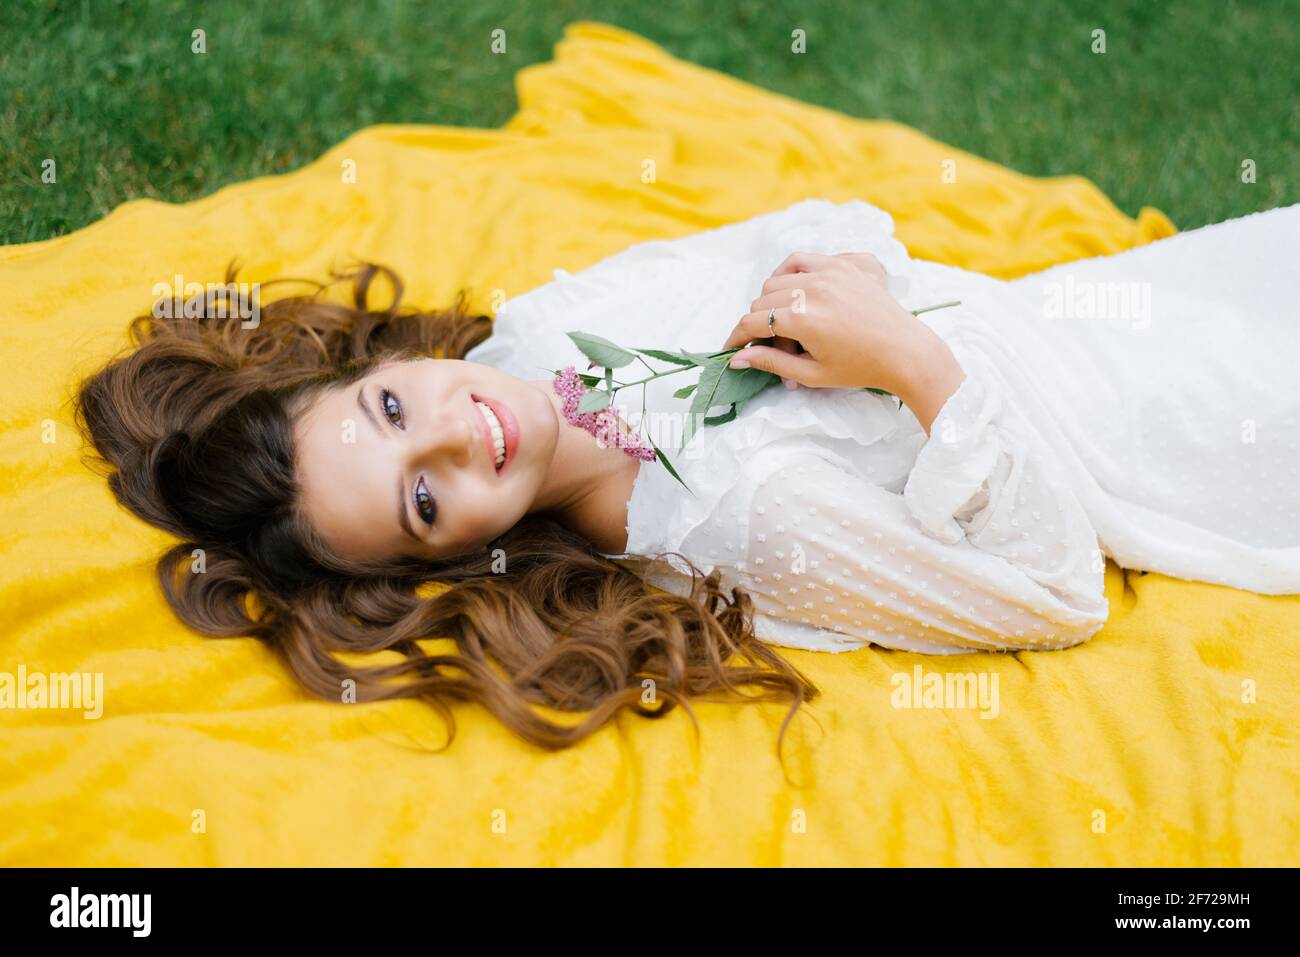 Arriba ver a la joven en un picnic, tumbada en una manta. Ella es feliz y sonríe una deslumbrante sonrisa blanca como la nieve y sostiene una flor en sus manos Foto de stock